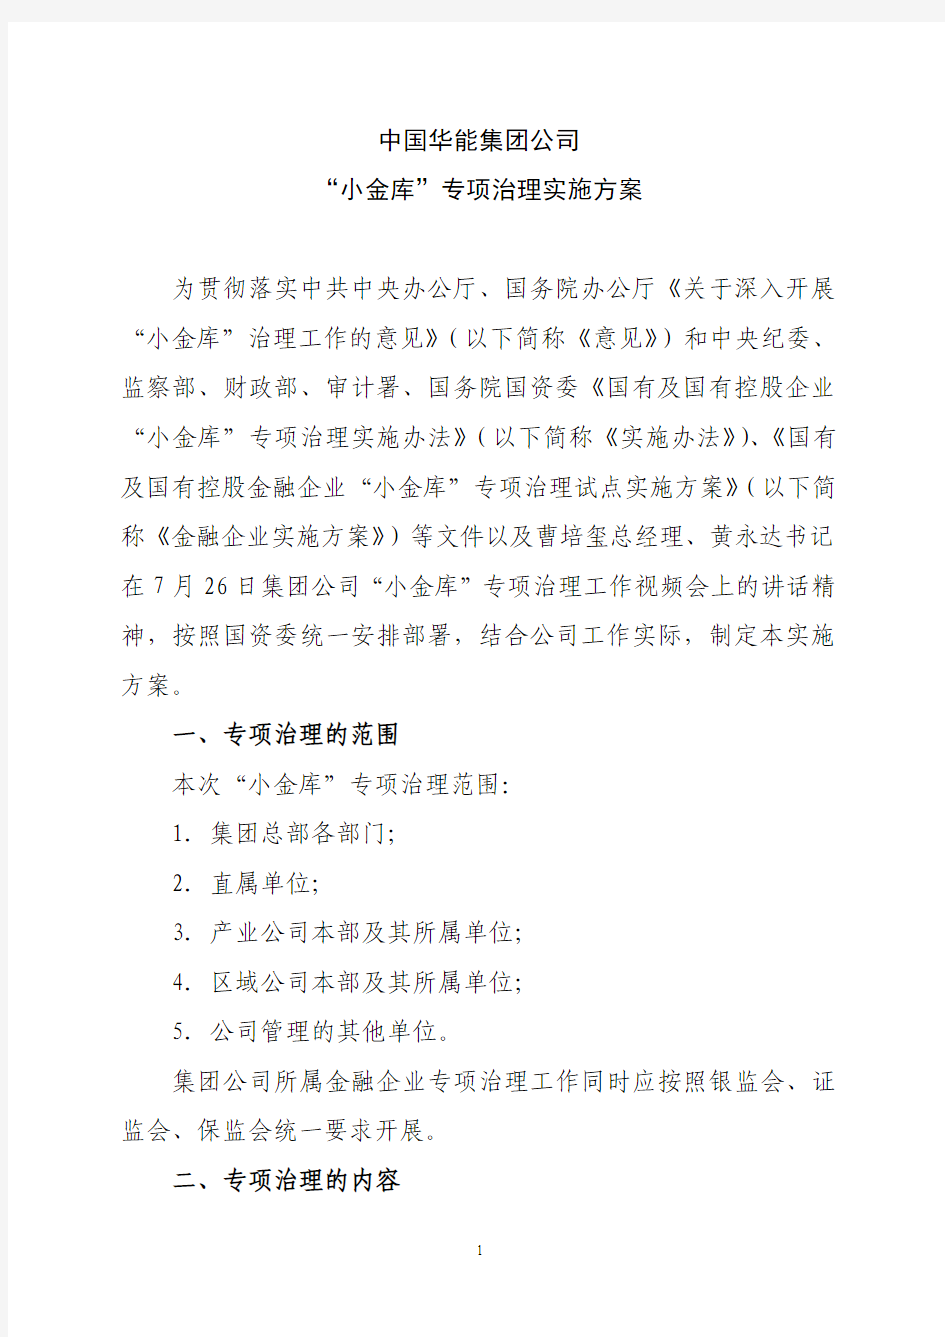 2010中国华能集团公司“小金库”专项治理实施方案